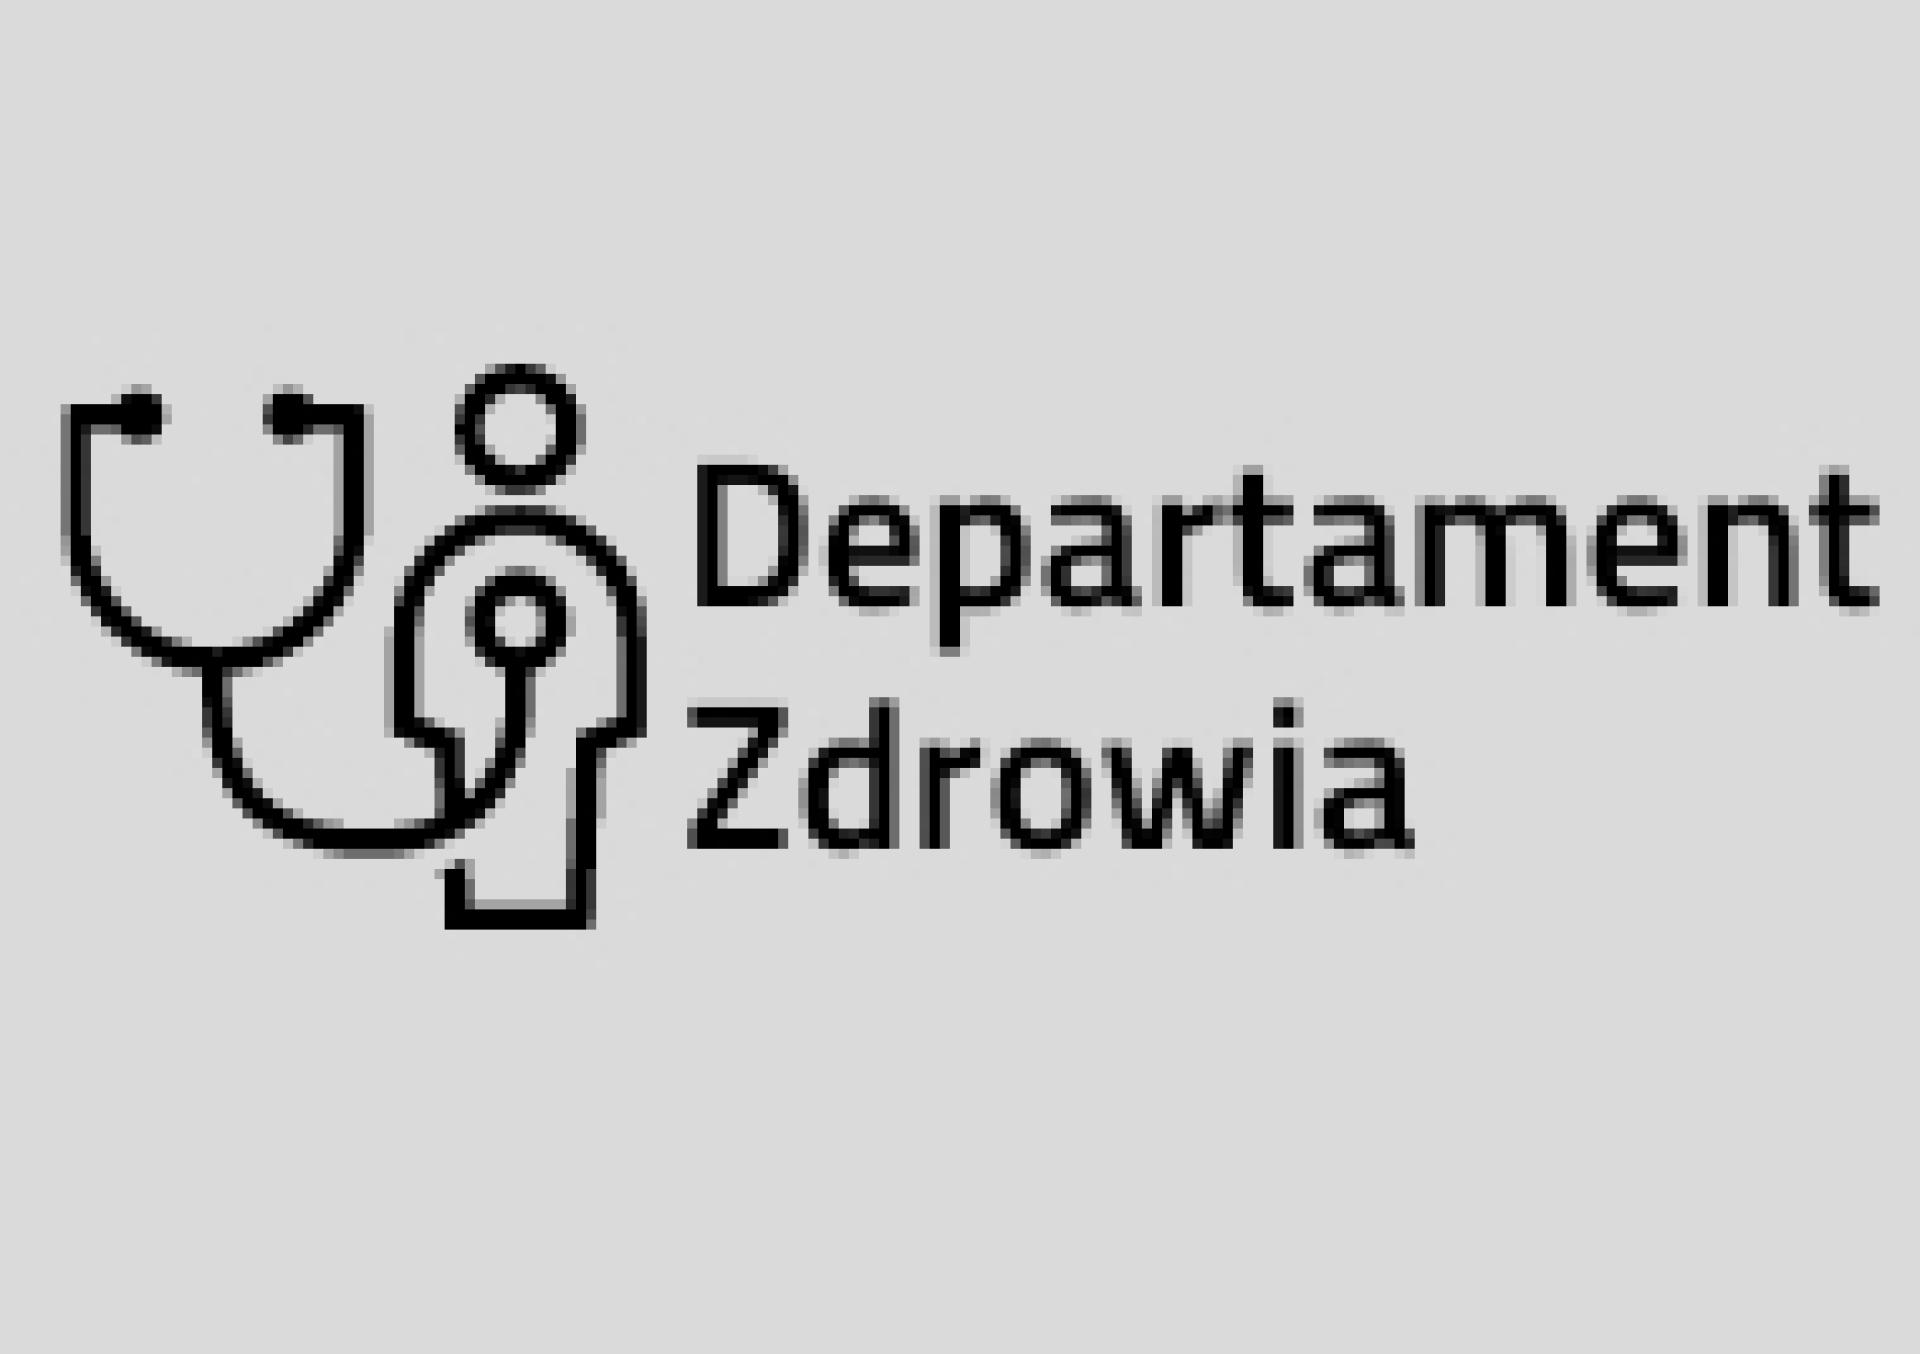 Konsultacje projektu uchwały Sejmiku Województwa Wielkopolskiego w sprawie nadania statutu Wielkopolskiemu Ośrodkowi Reumatologicznemu Samodzielnemu Publicznemu Specjalistycznemu Zespołowi Opieki Zdrowotnej w Śremie - zobacz więcej